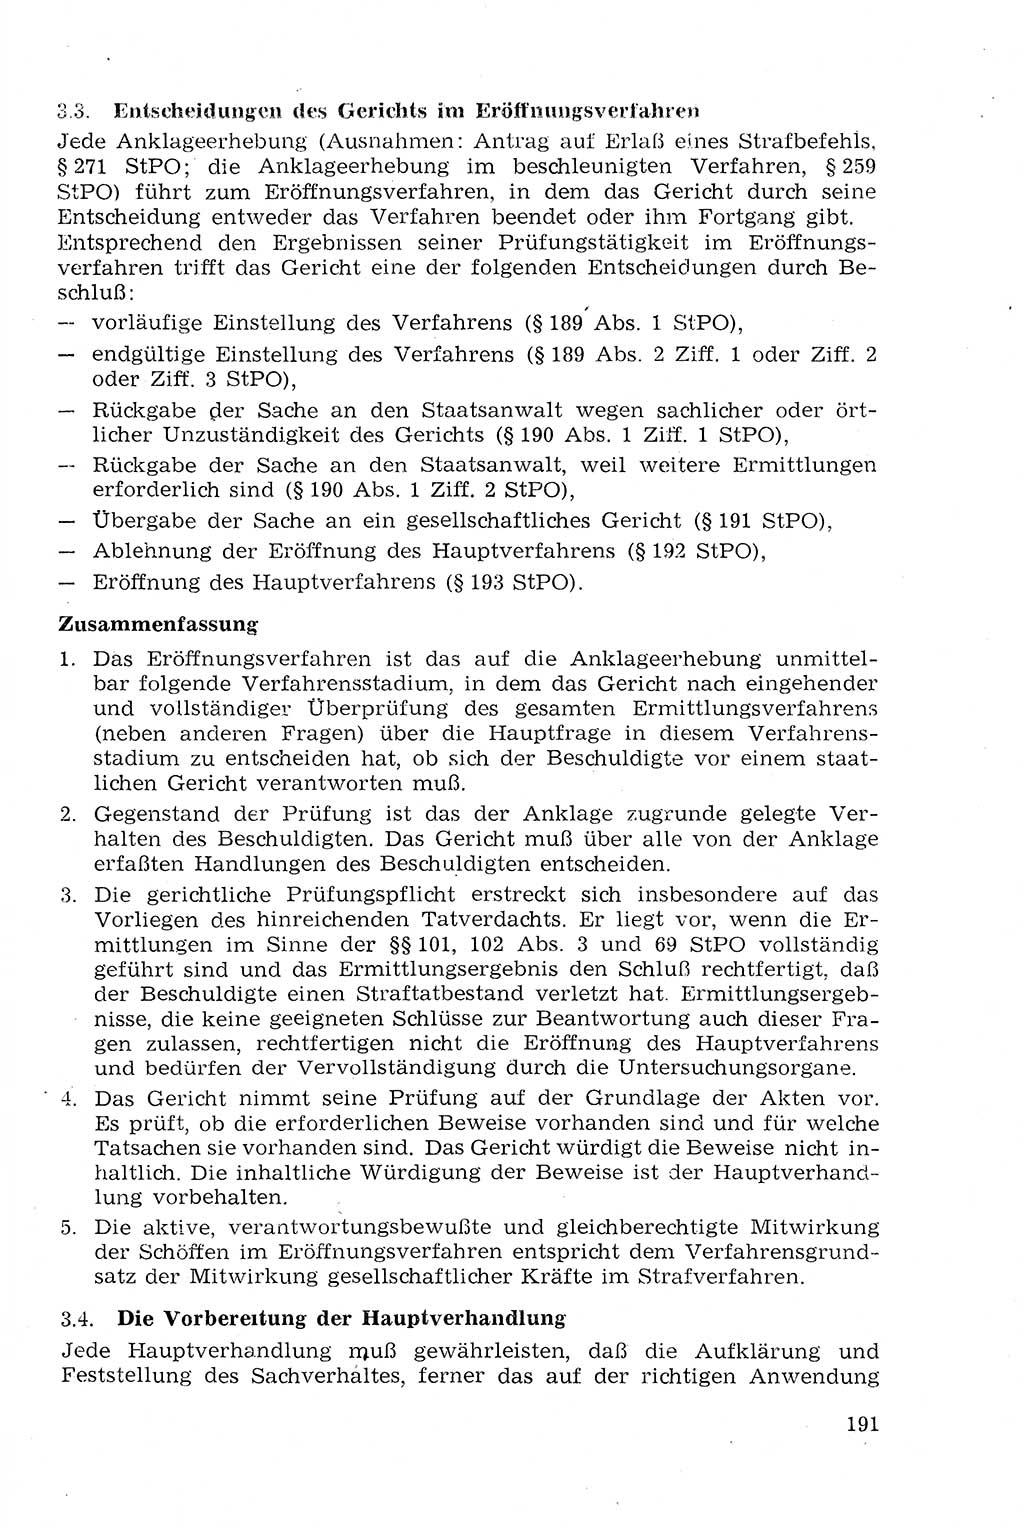 Strafprozeßrecht der DDR (Deutsche Demokratische Republik), Lehrmaterial 1969, Seite 191 (Strafprozeßr. DDR Lehrmat. 1969, S. 191)